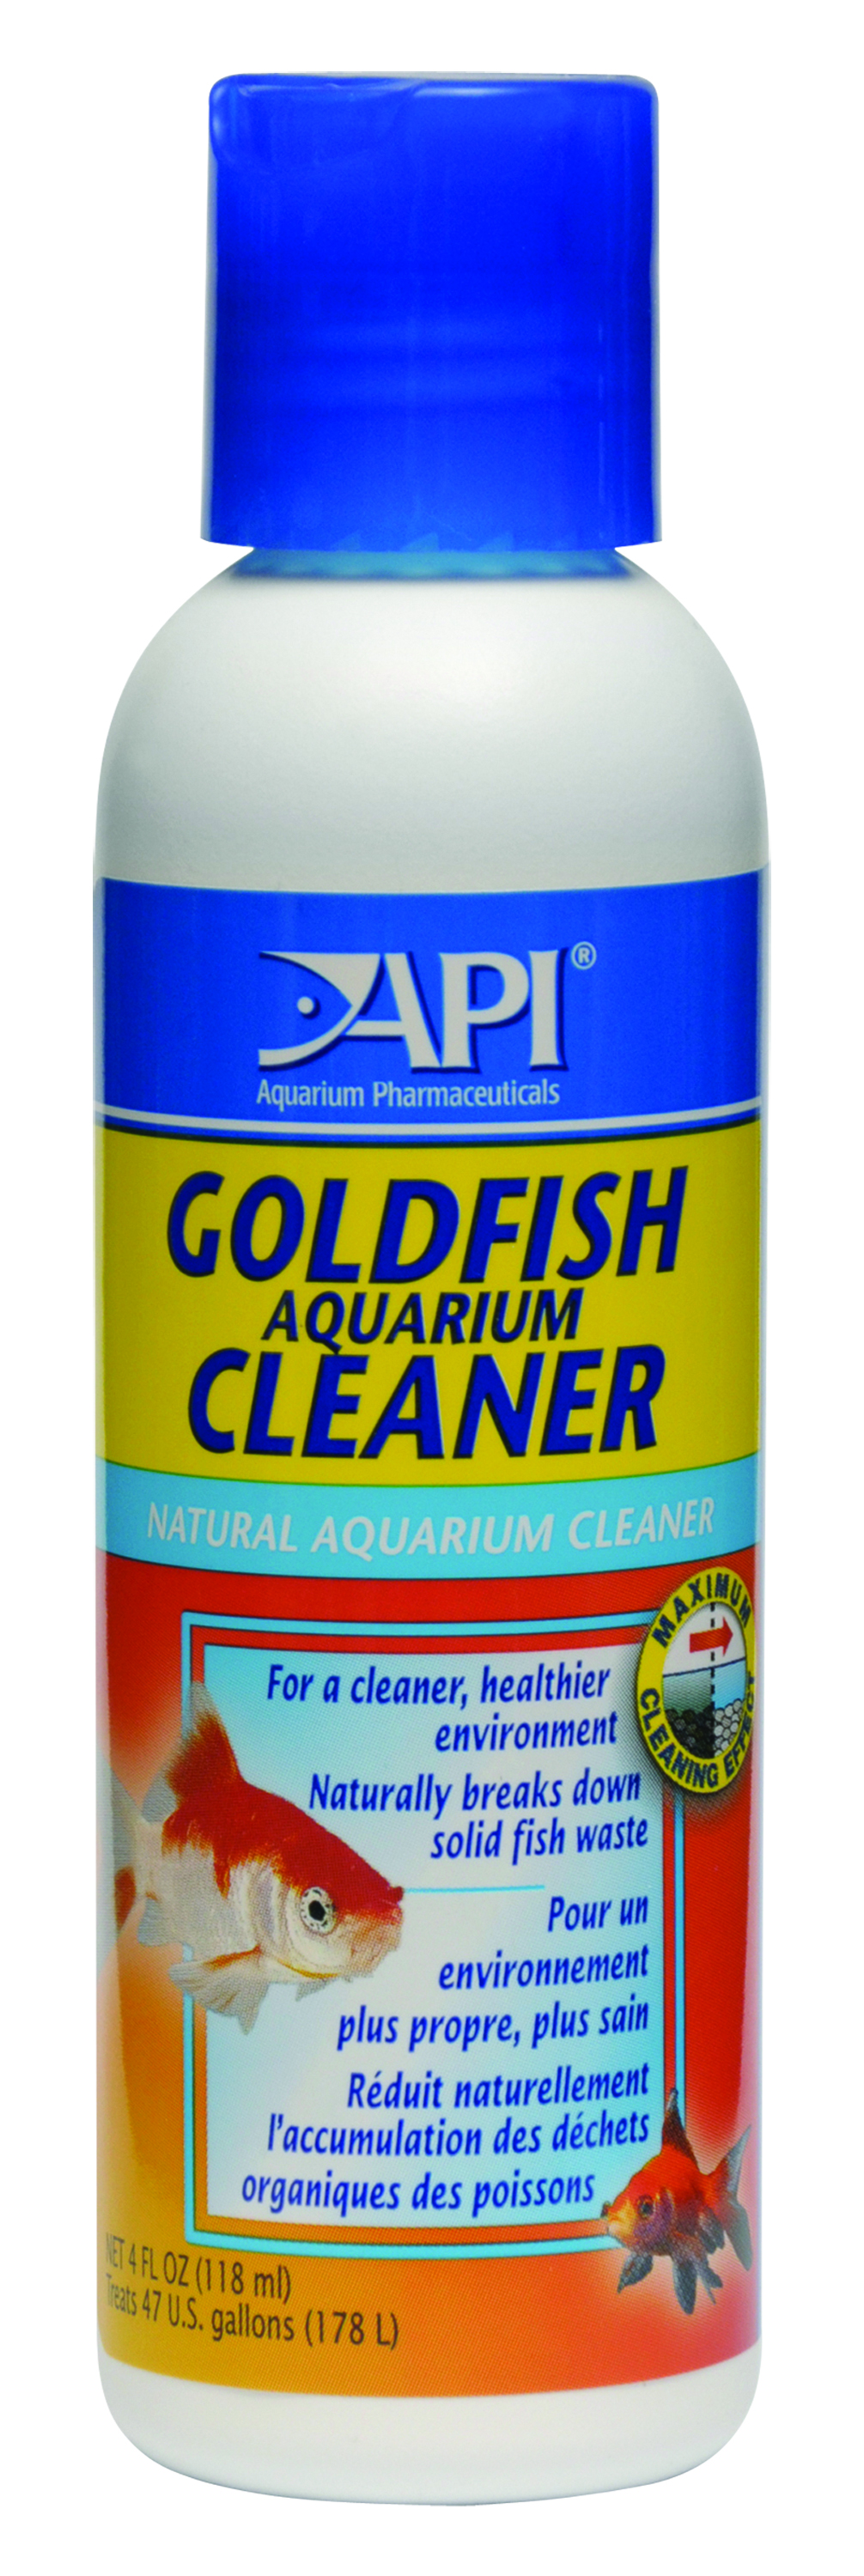 goldfish aquarium cleaner